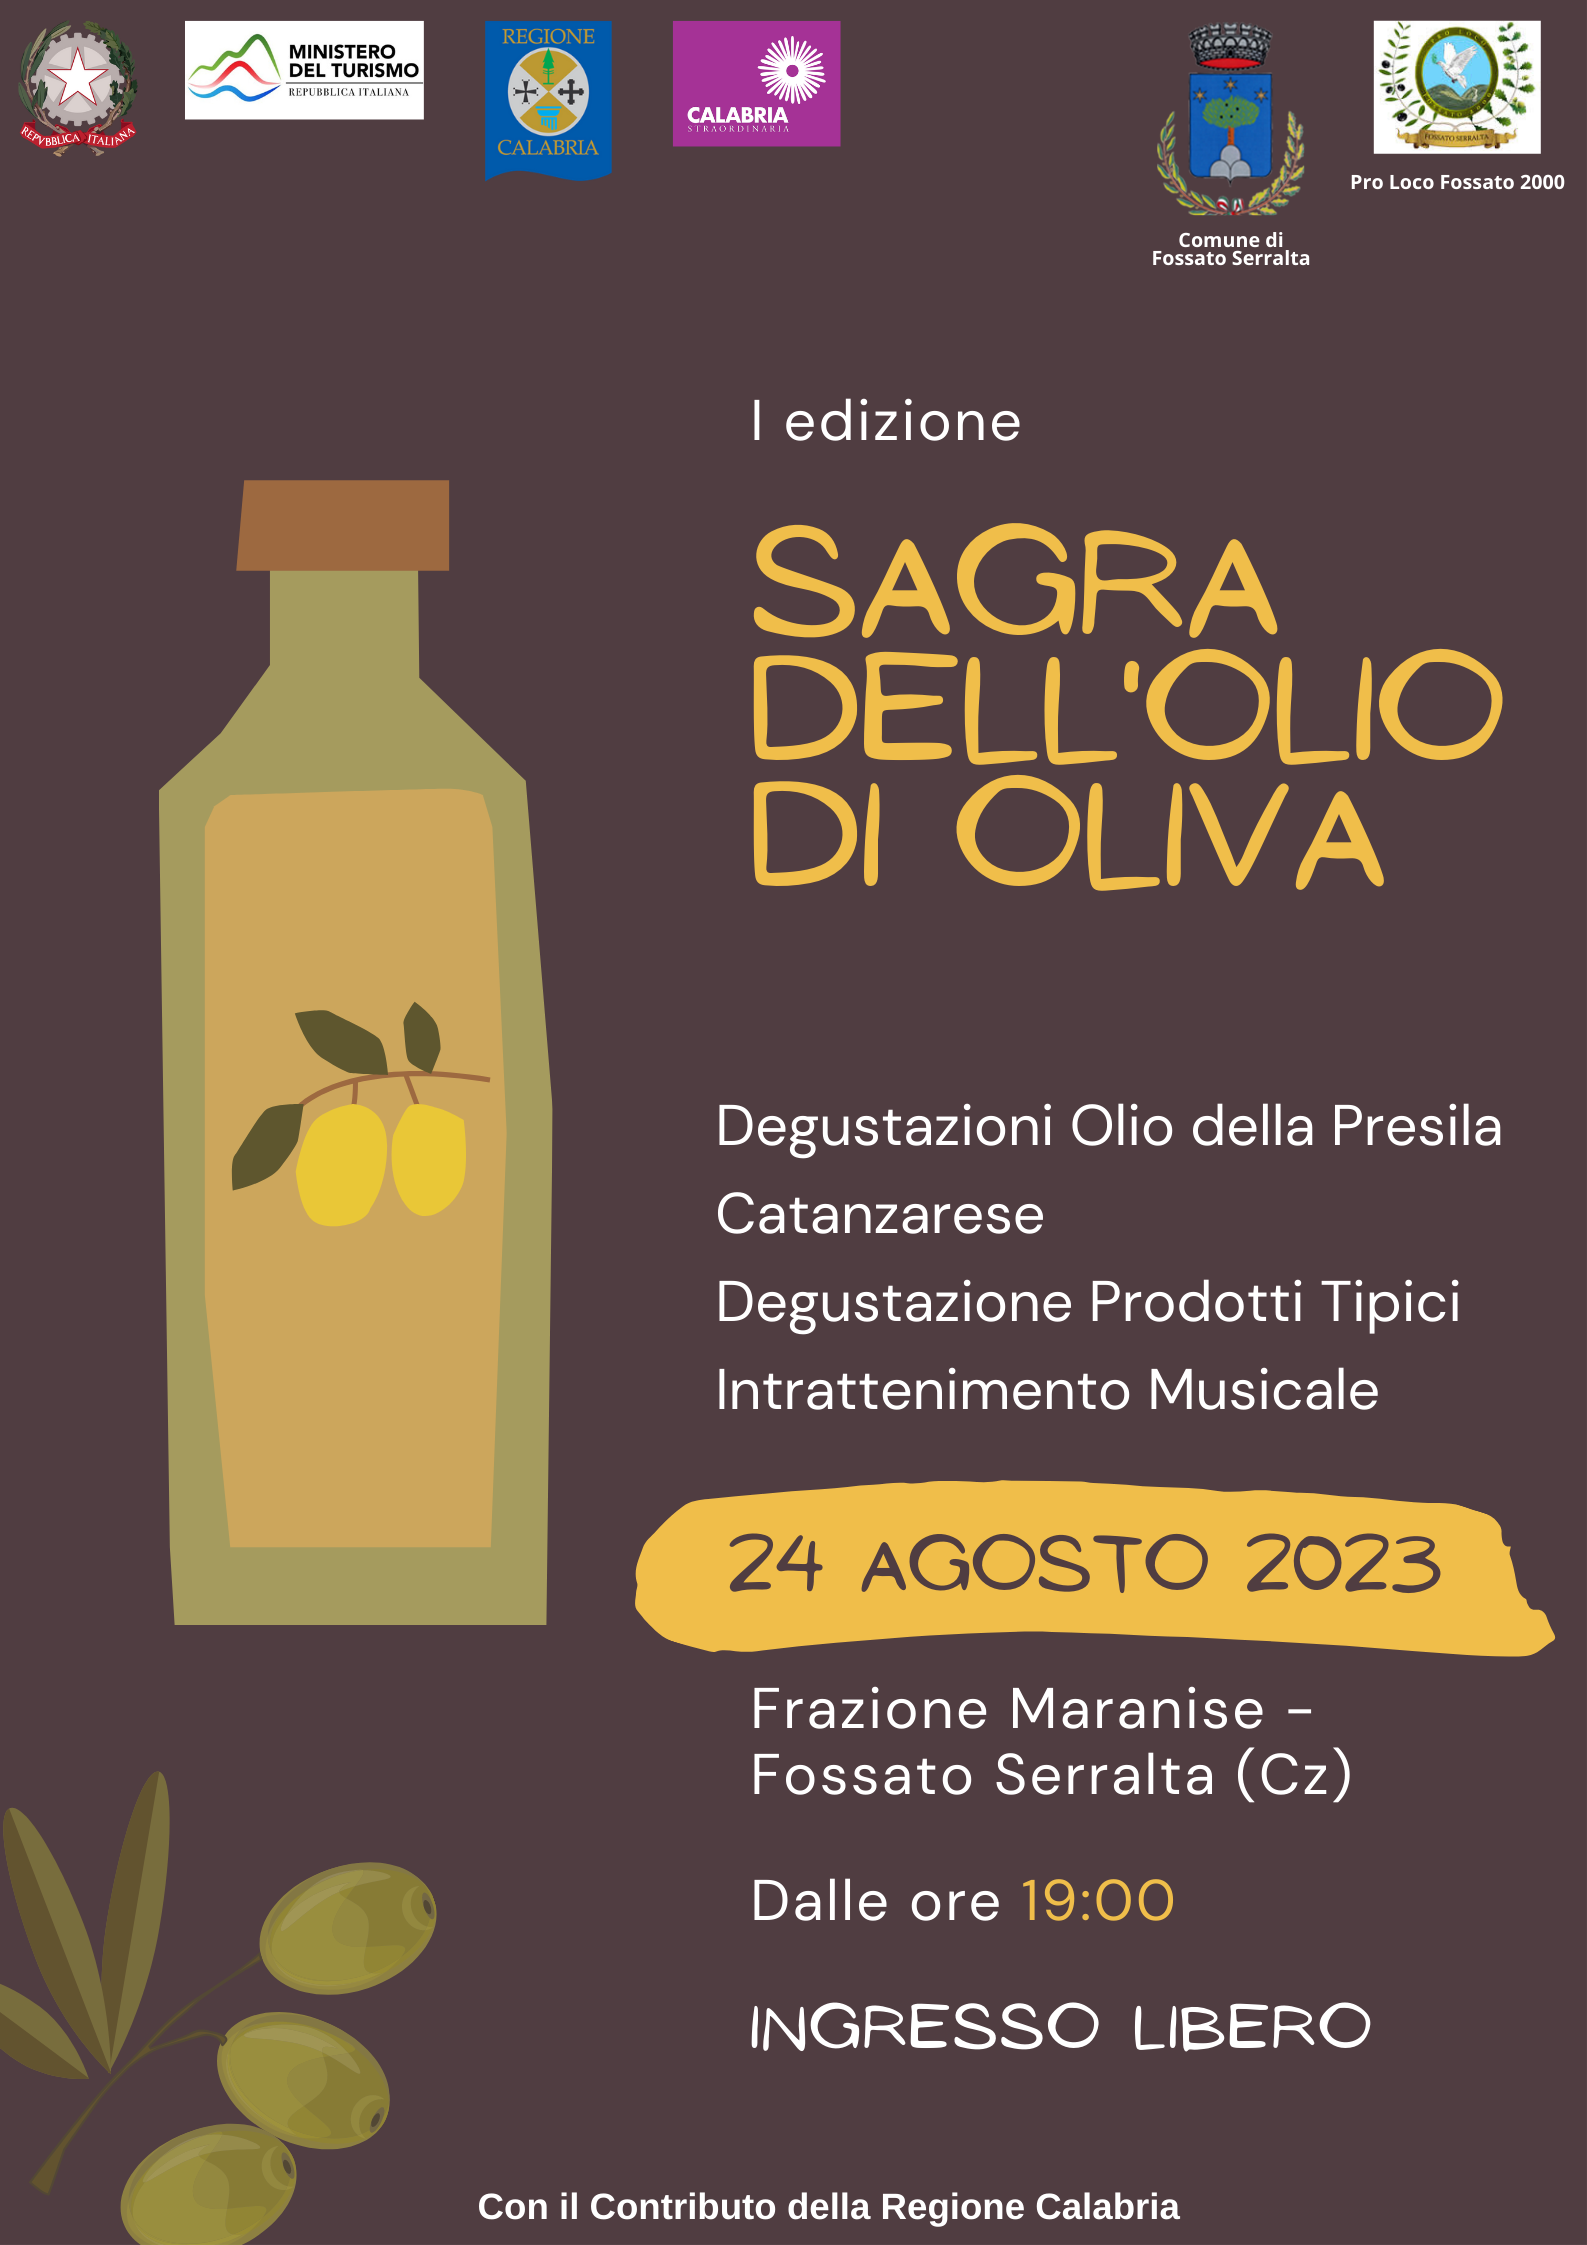 Degustazione prodotti tipici calabresi "Sagra dell'olio d'oliva"